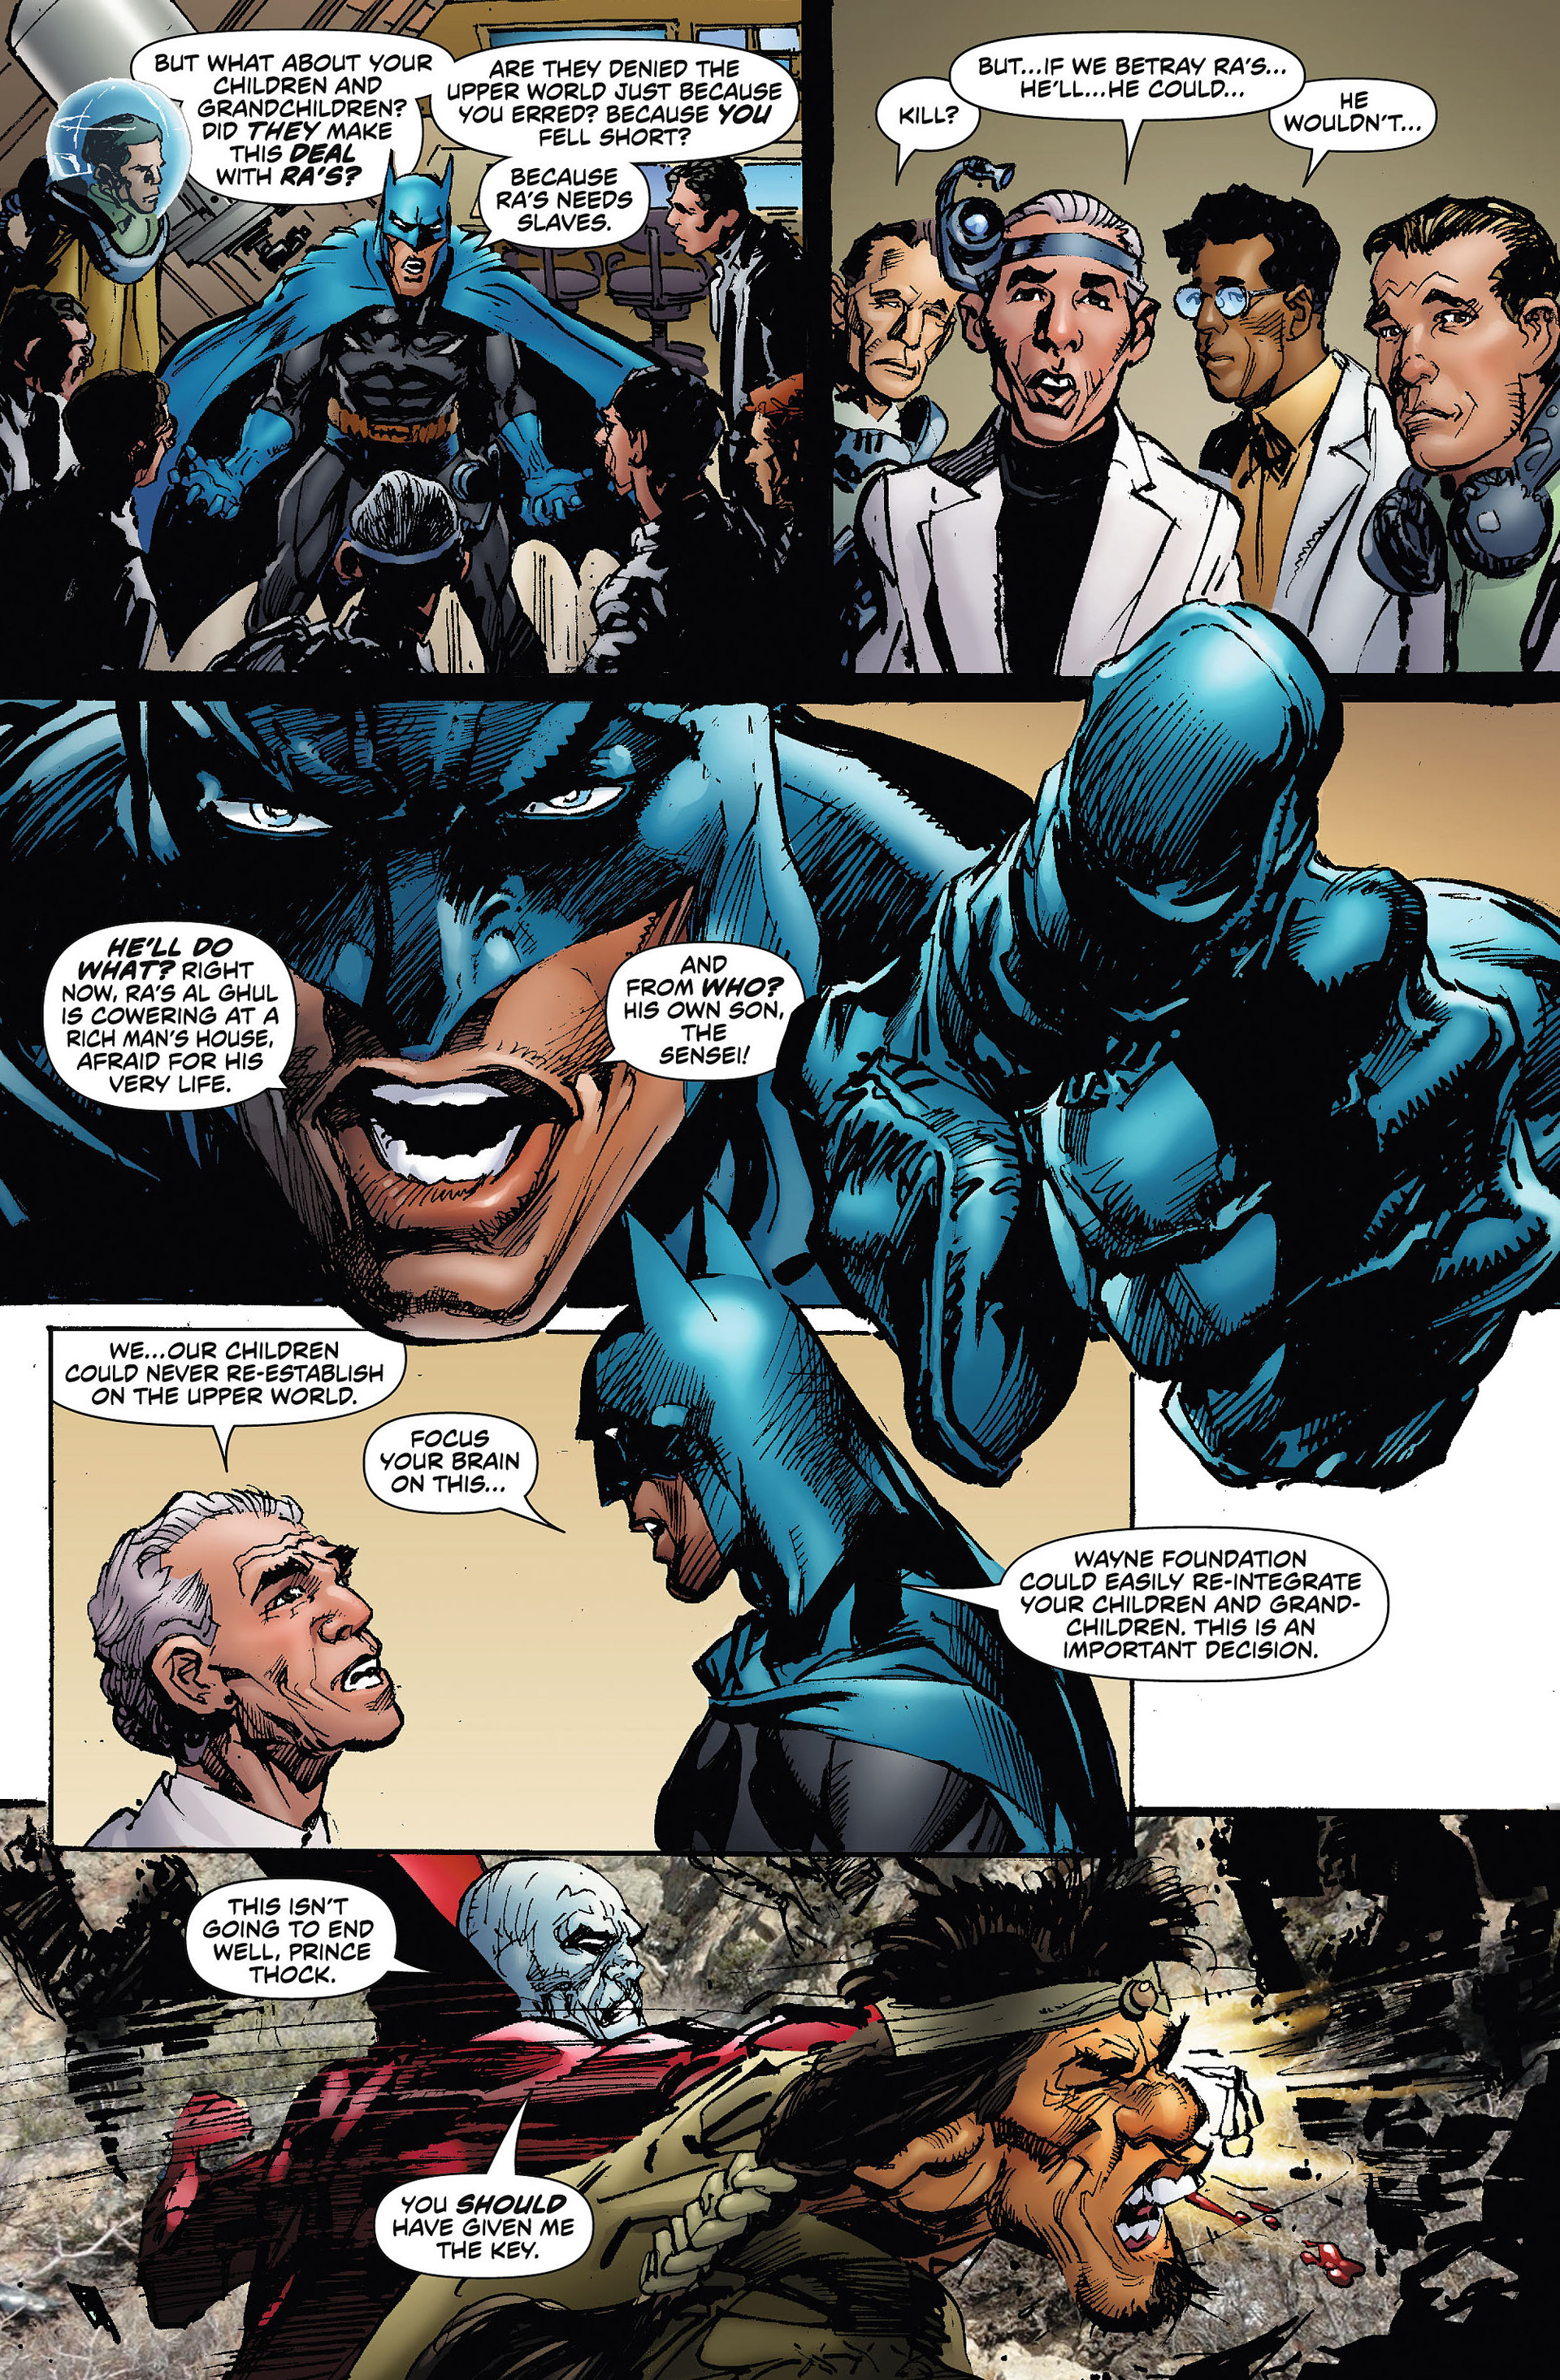 Batman Odyssey Issue 4 Read Batman Odyssey Issue 4 Comic Online In High Quality Read Full